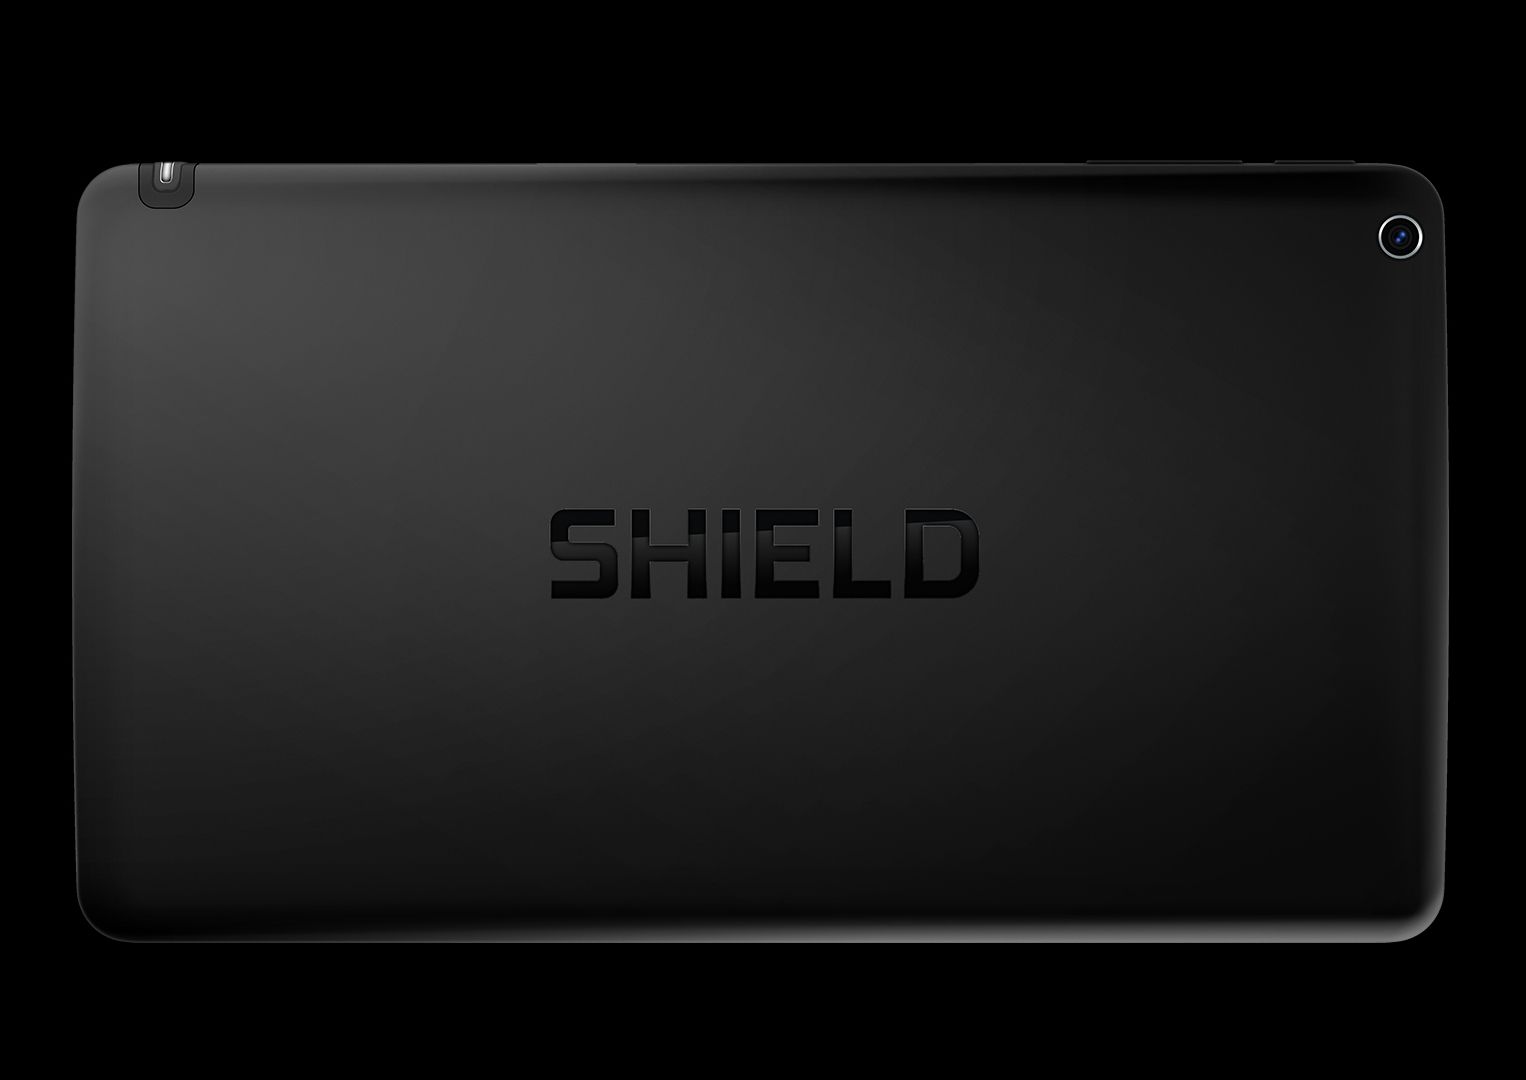 nvidia shield